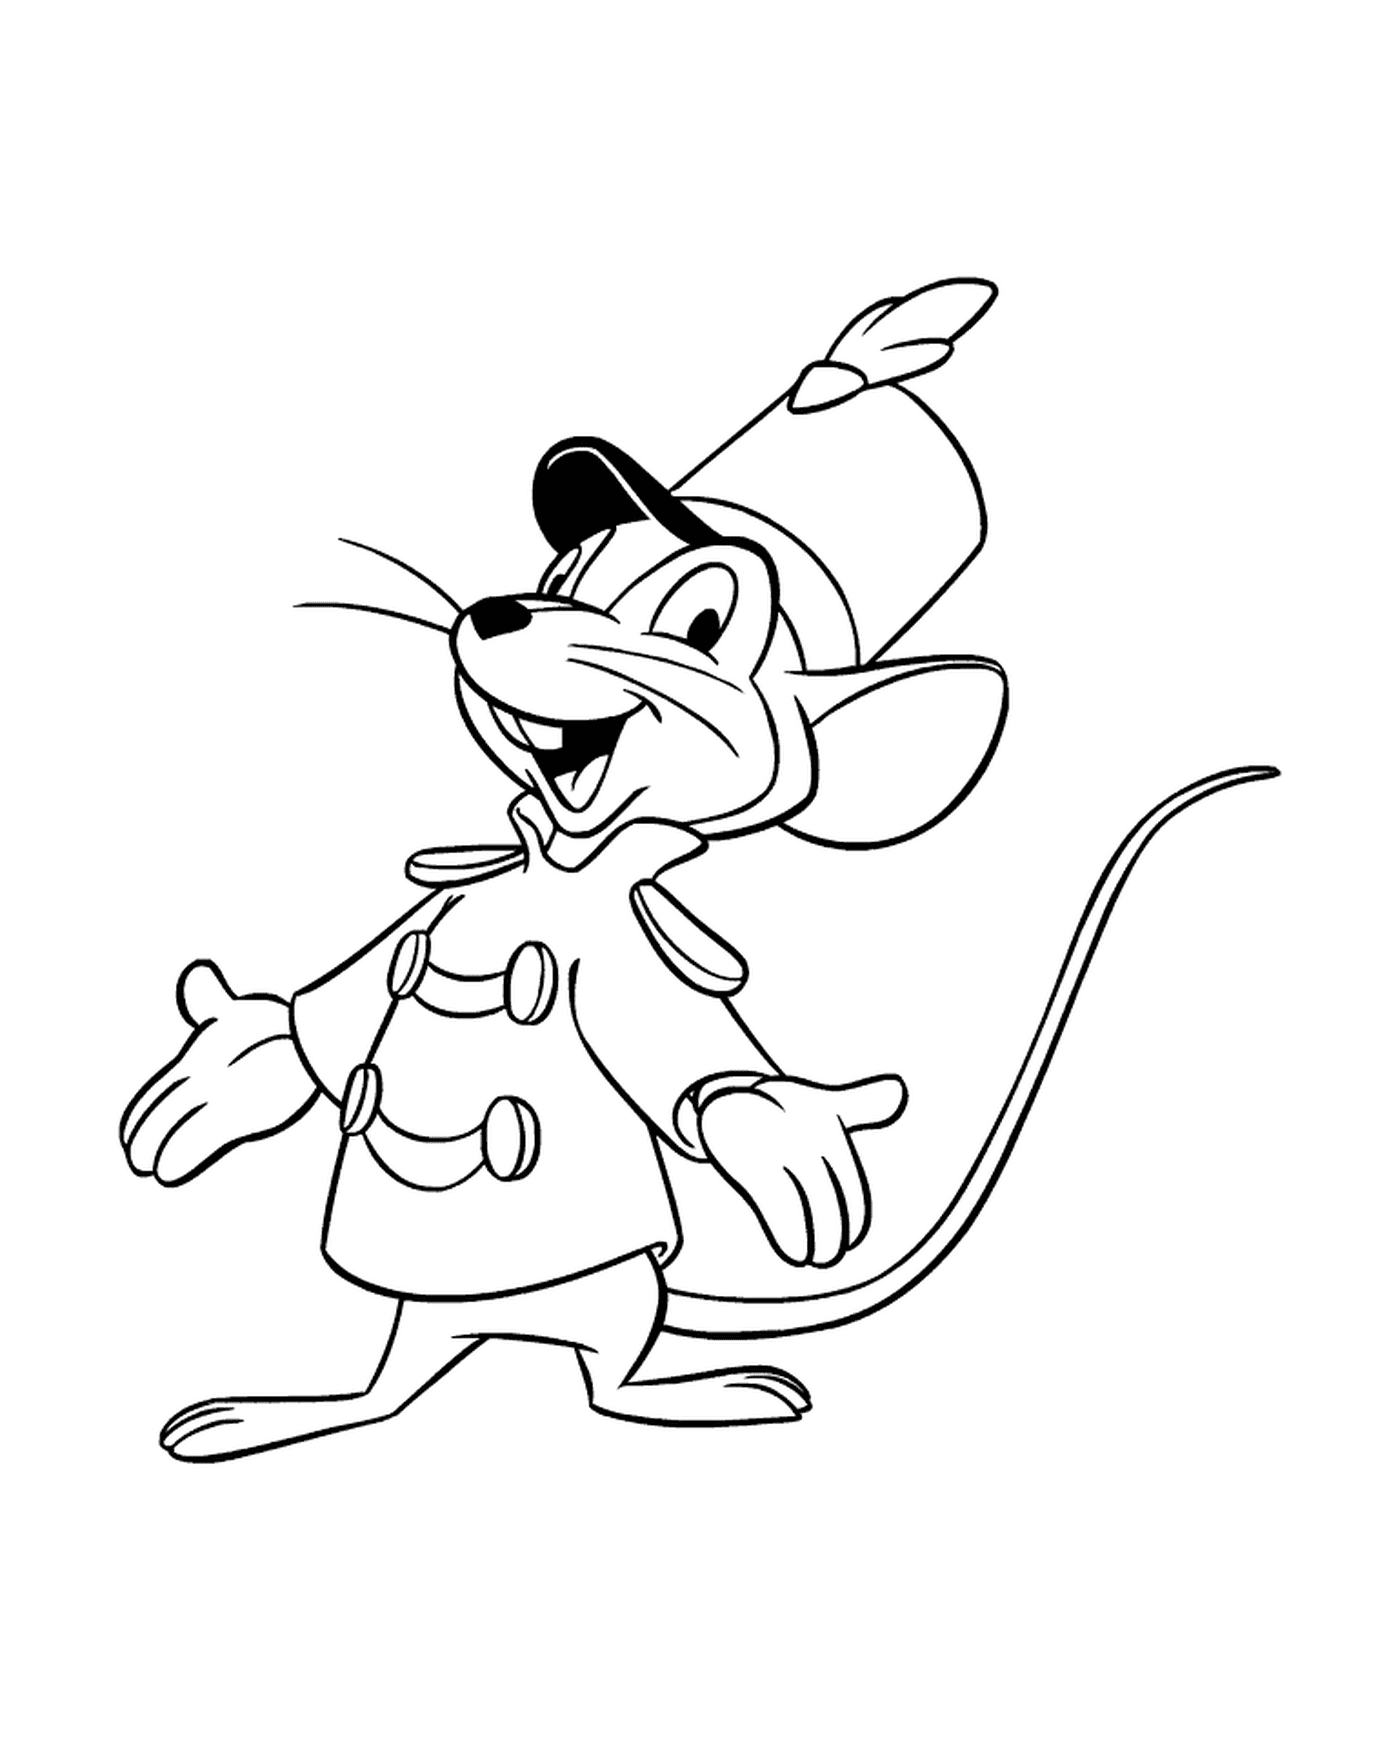  Eine Maus in einem Mantel und einem Hut gekleidet 